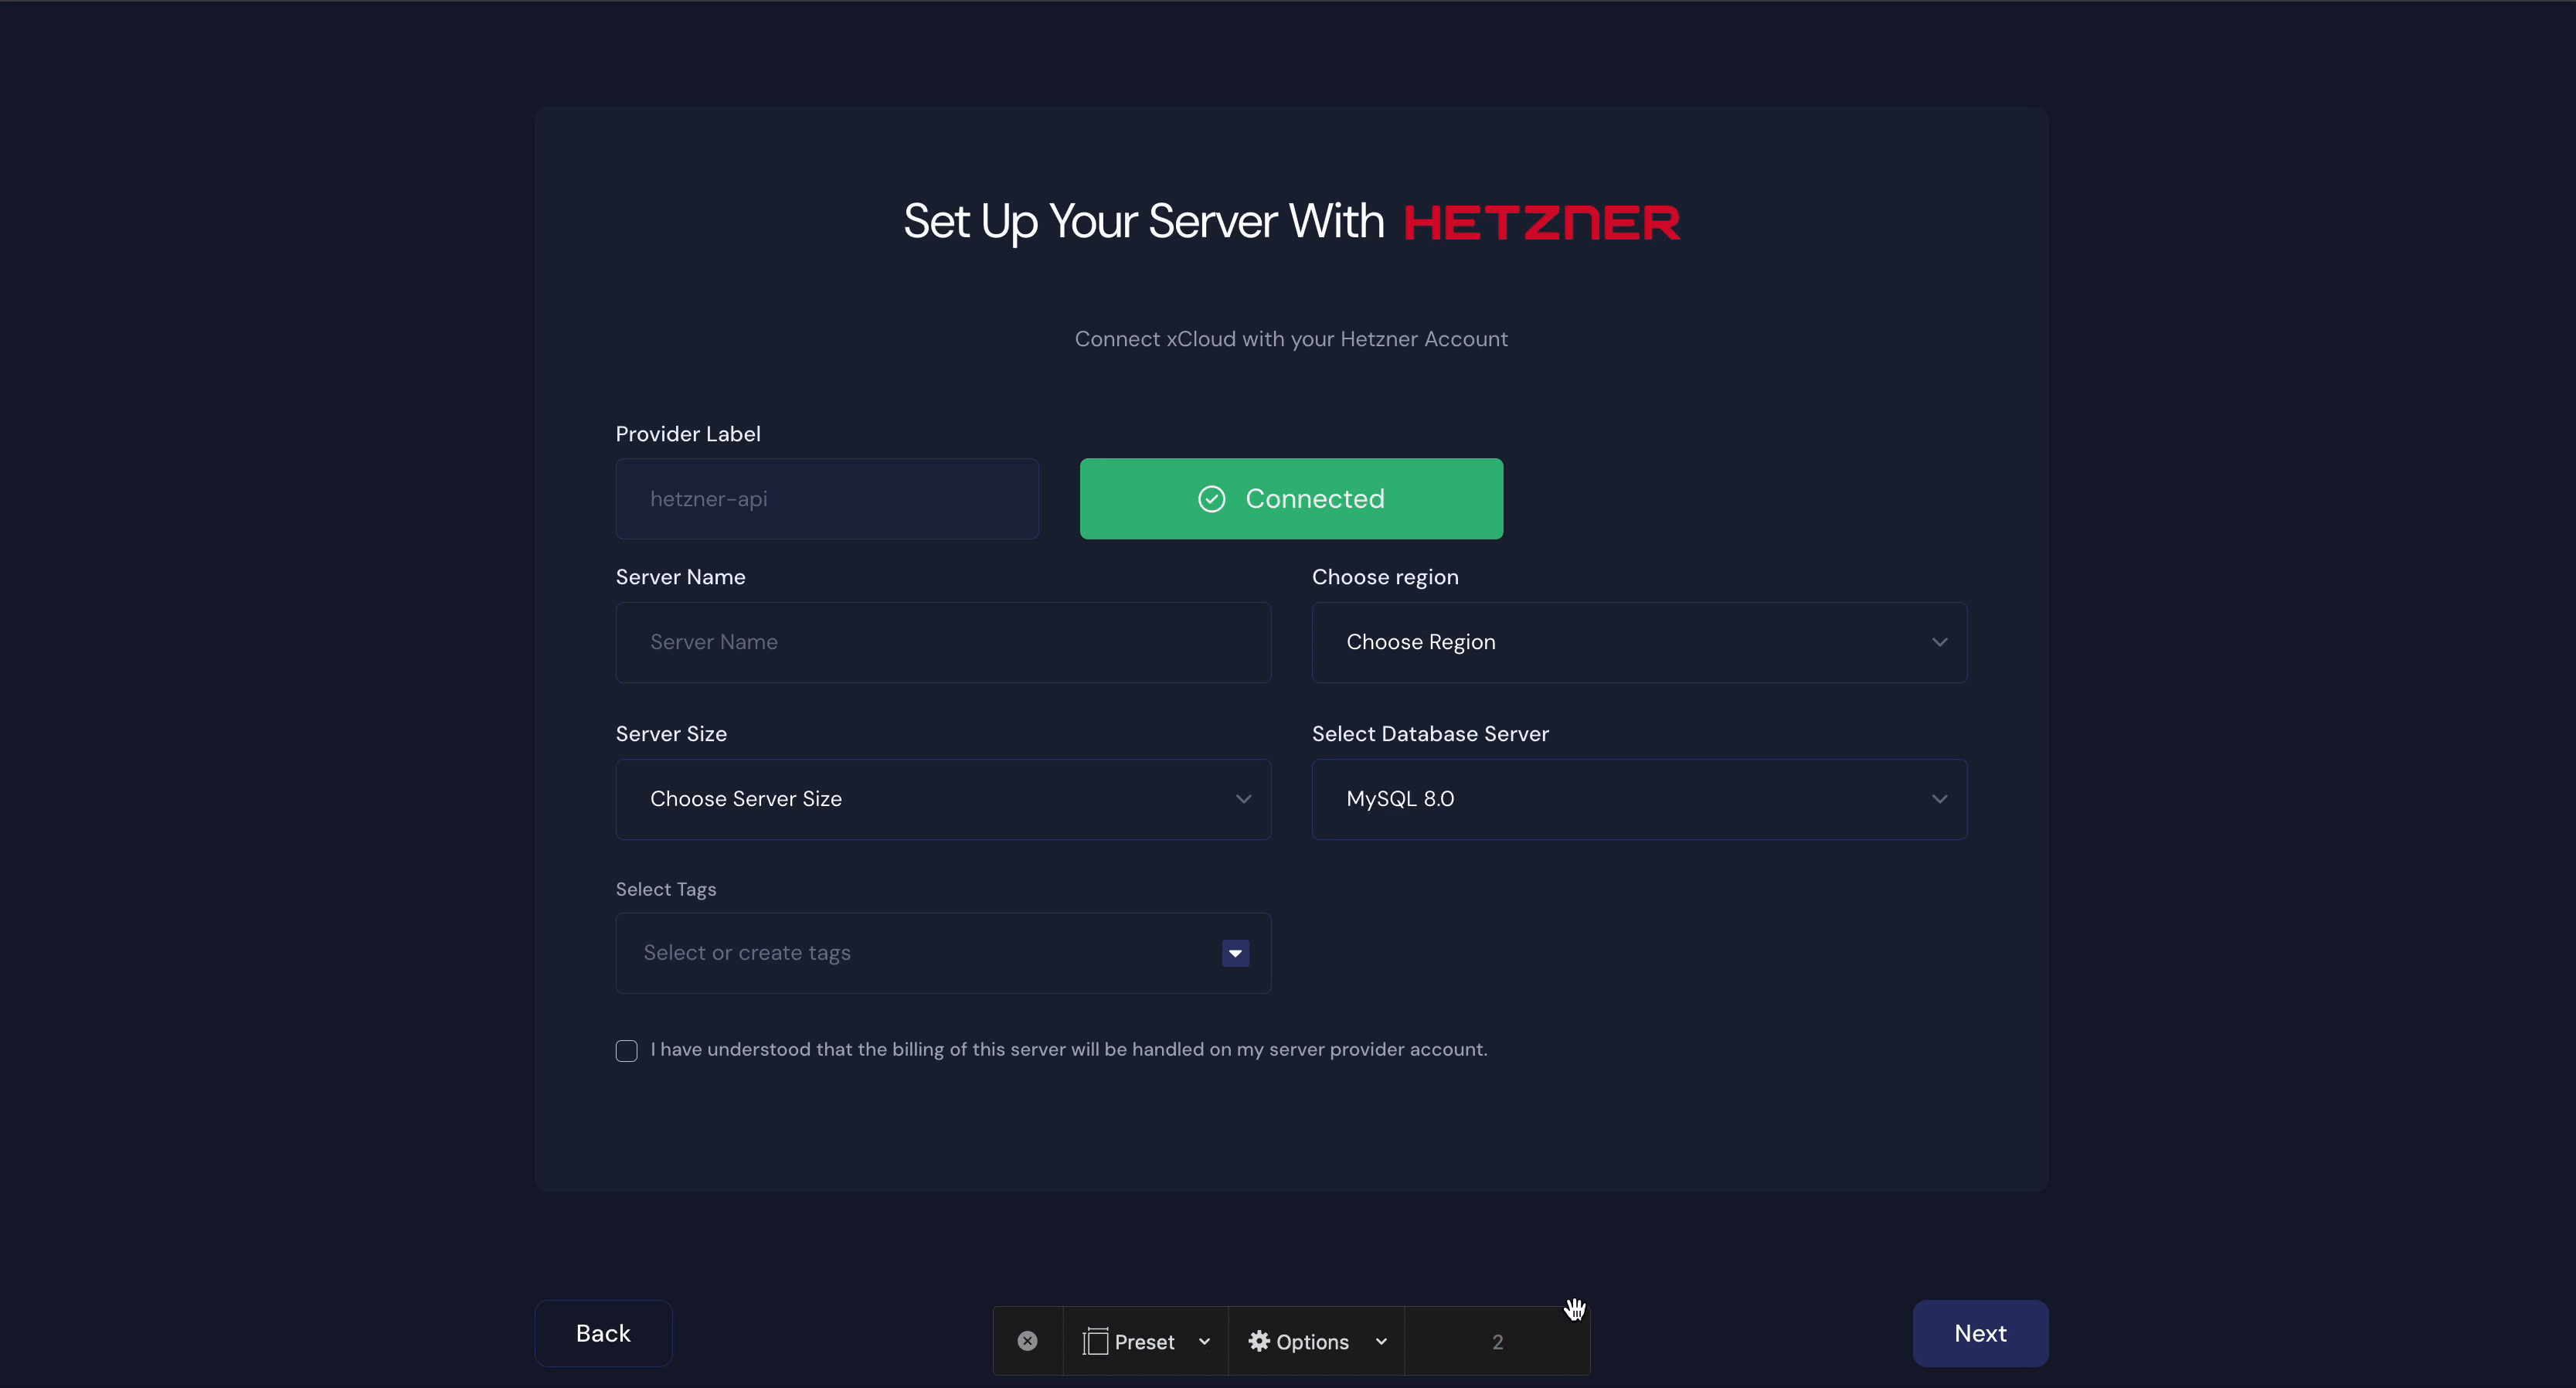 set up a Hetzner server in xCloud